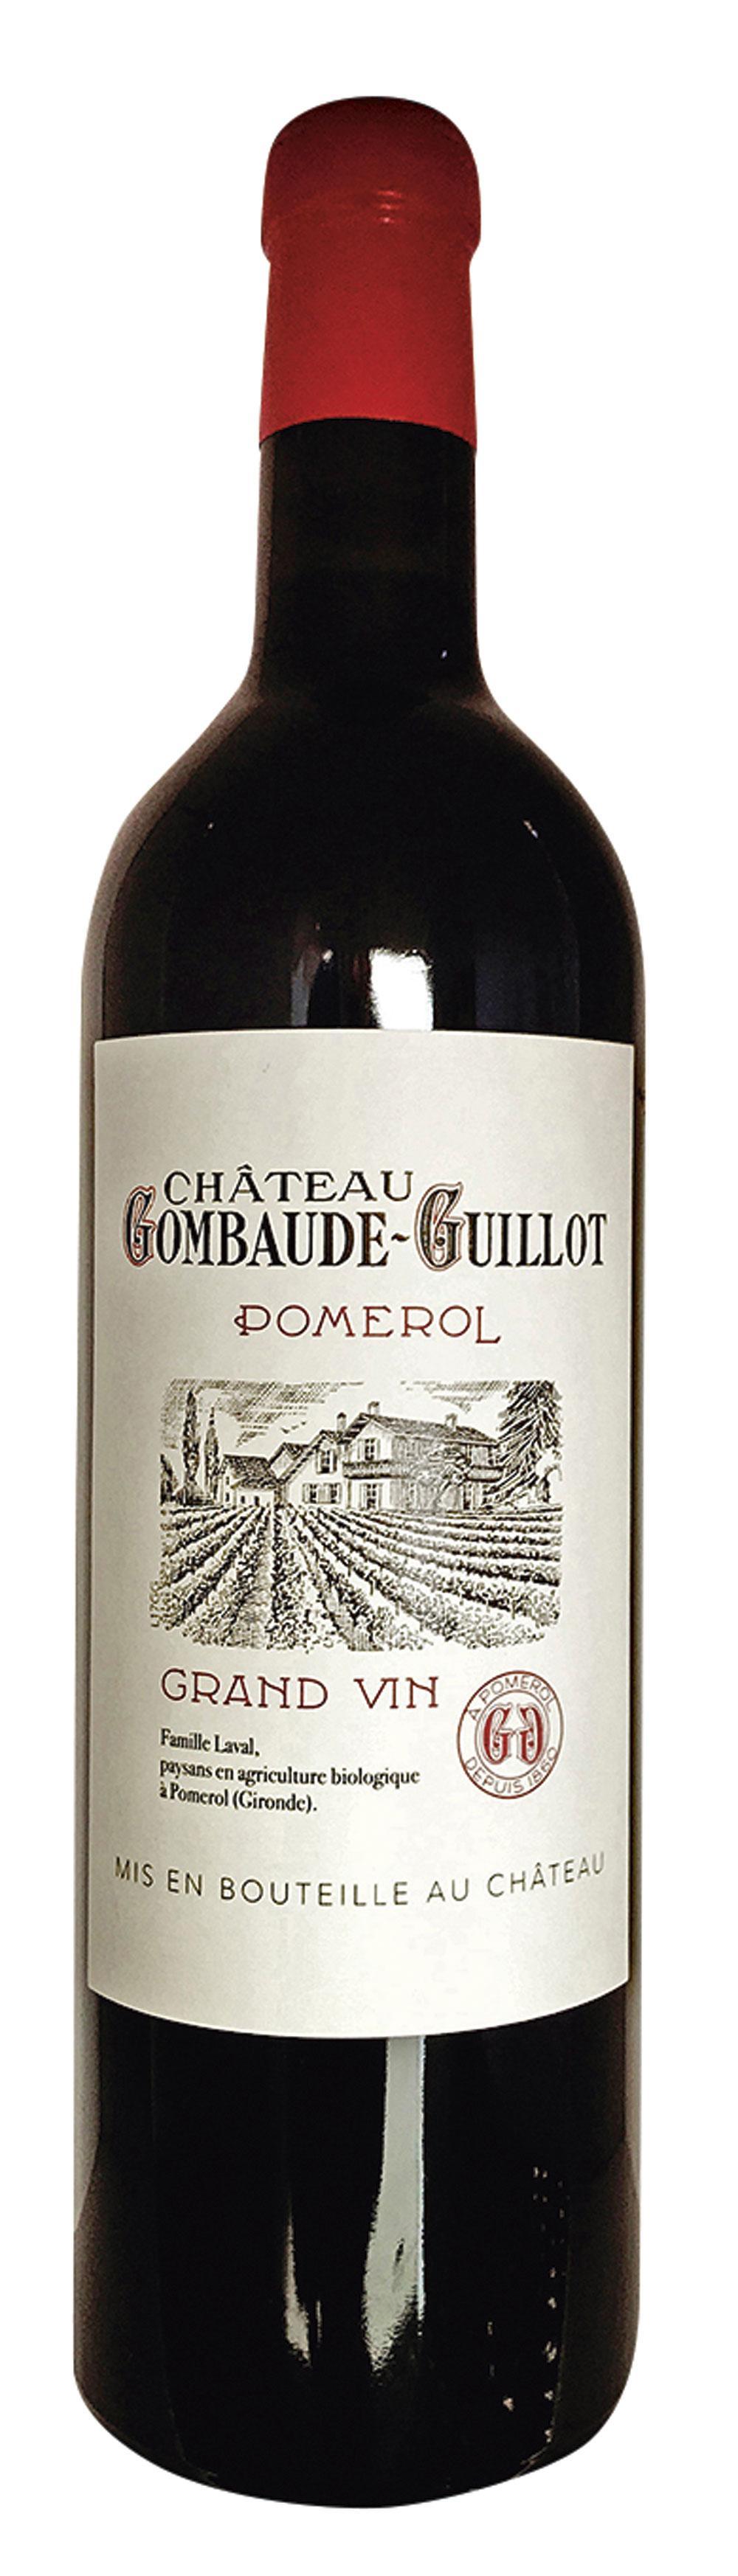 Château Gombaude-Guillot, pomerol 2010 (Bordeaux).